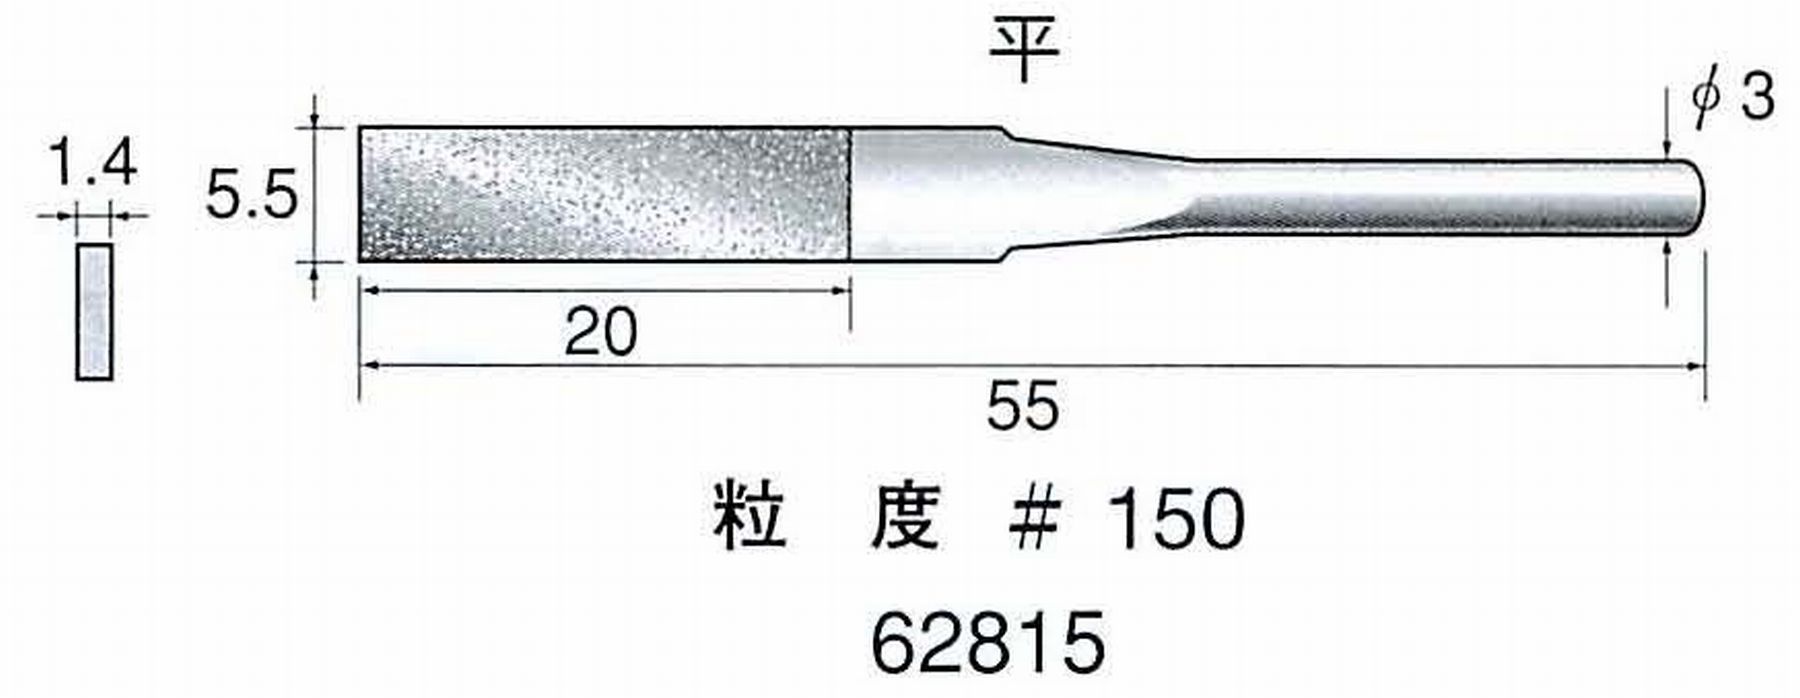 ナカニシ/NAKANISHI 電着ダイヤモンドヤスリショートタイプ 平 62815